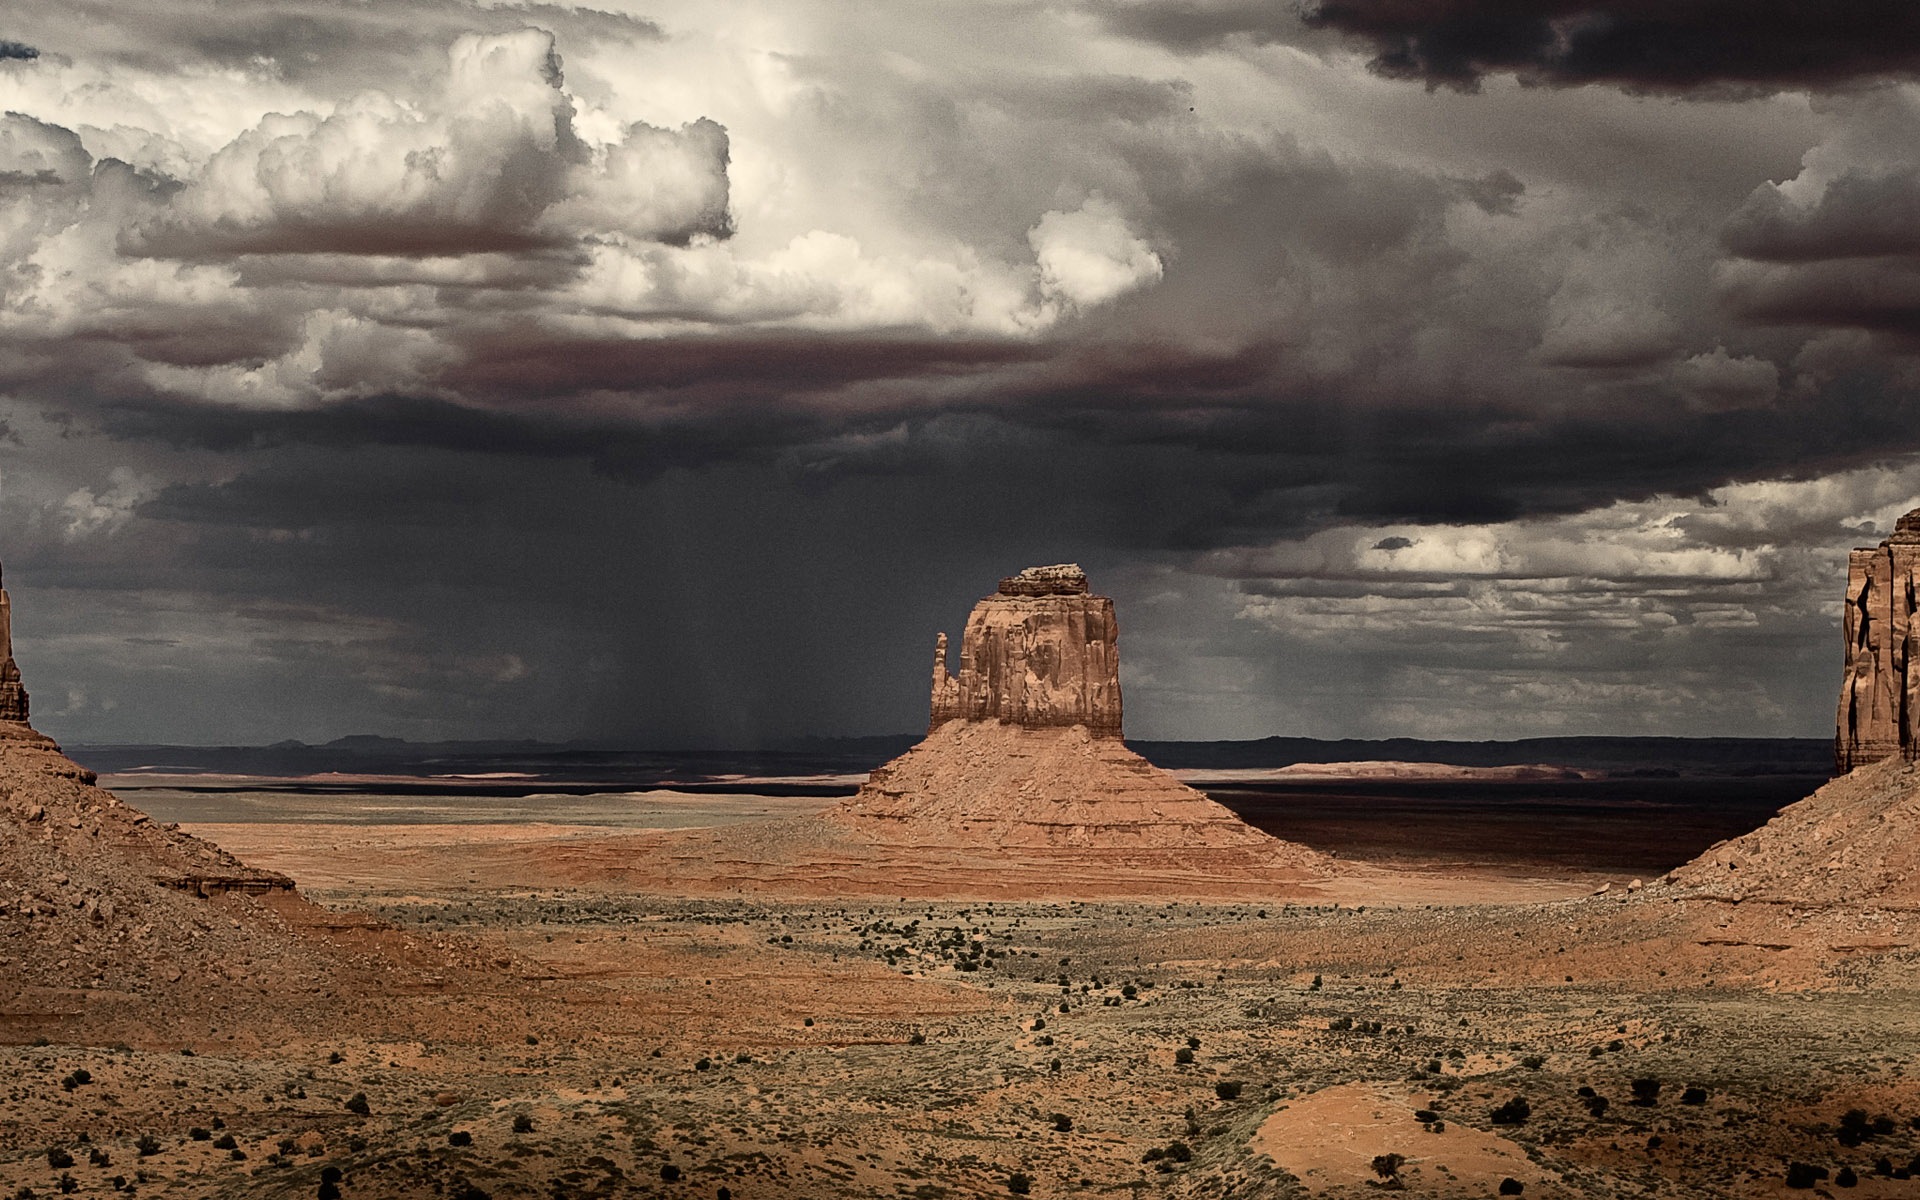 Les déserts chauds et arides, de Windows 8 fonds d'écran widescreen panoramique #7 - 1920x1200